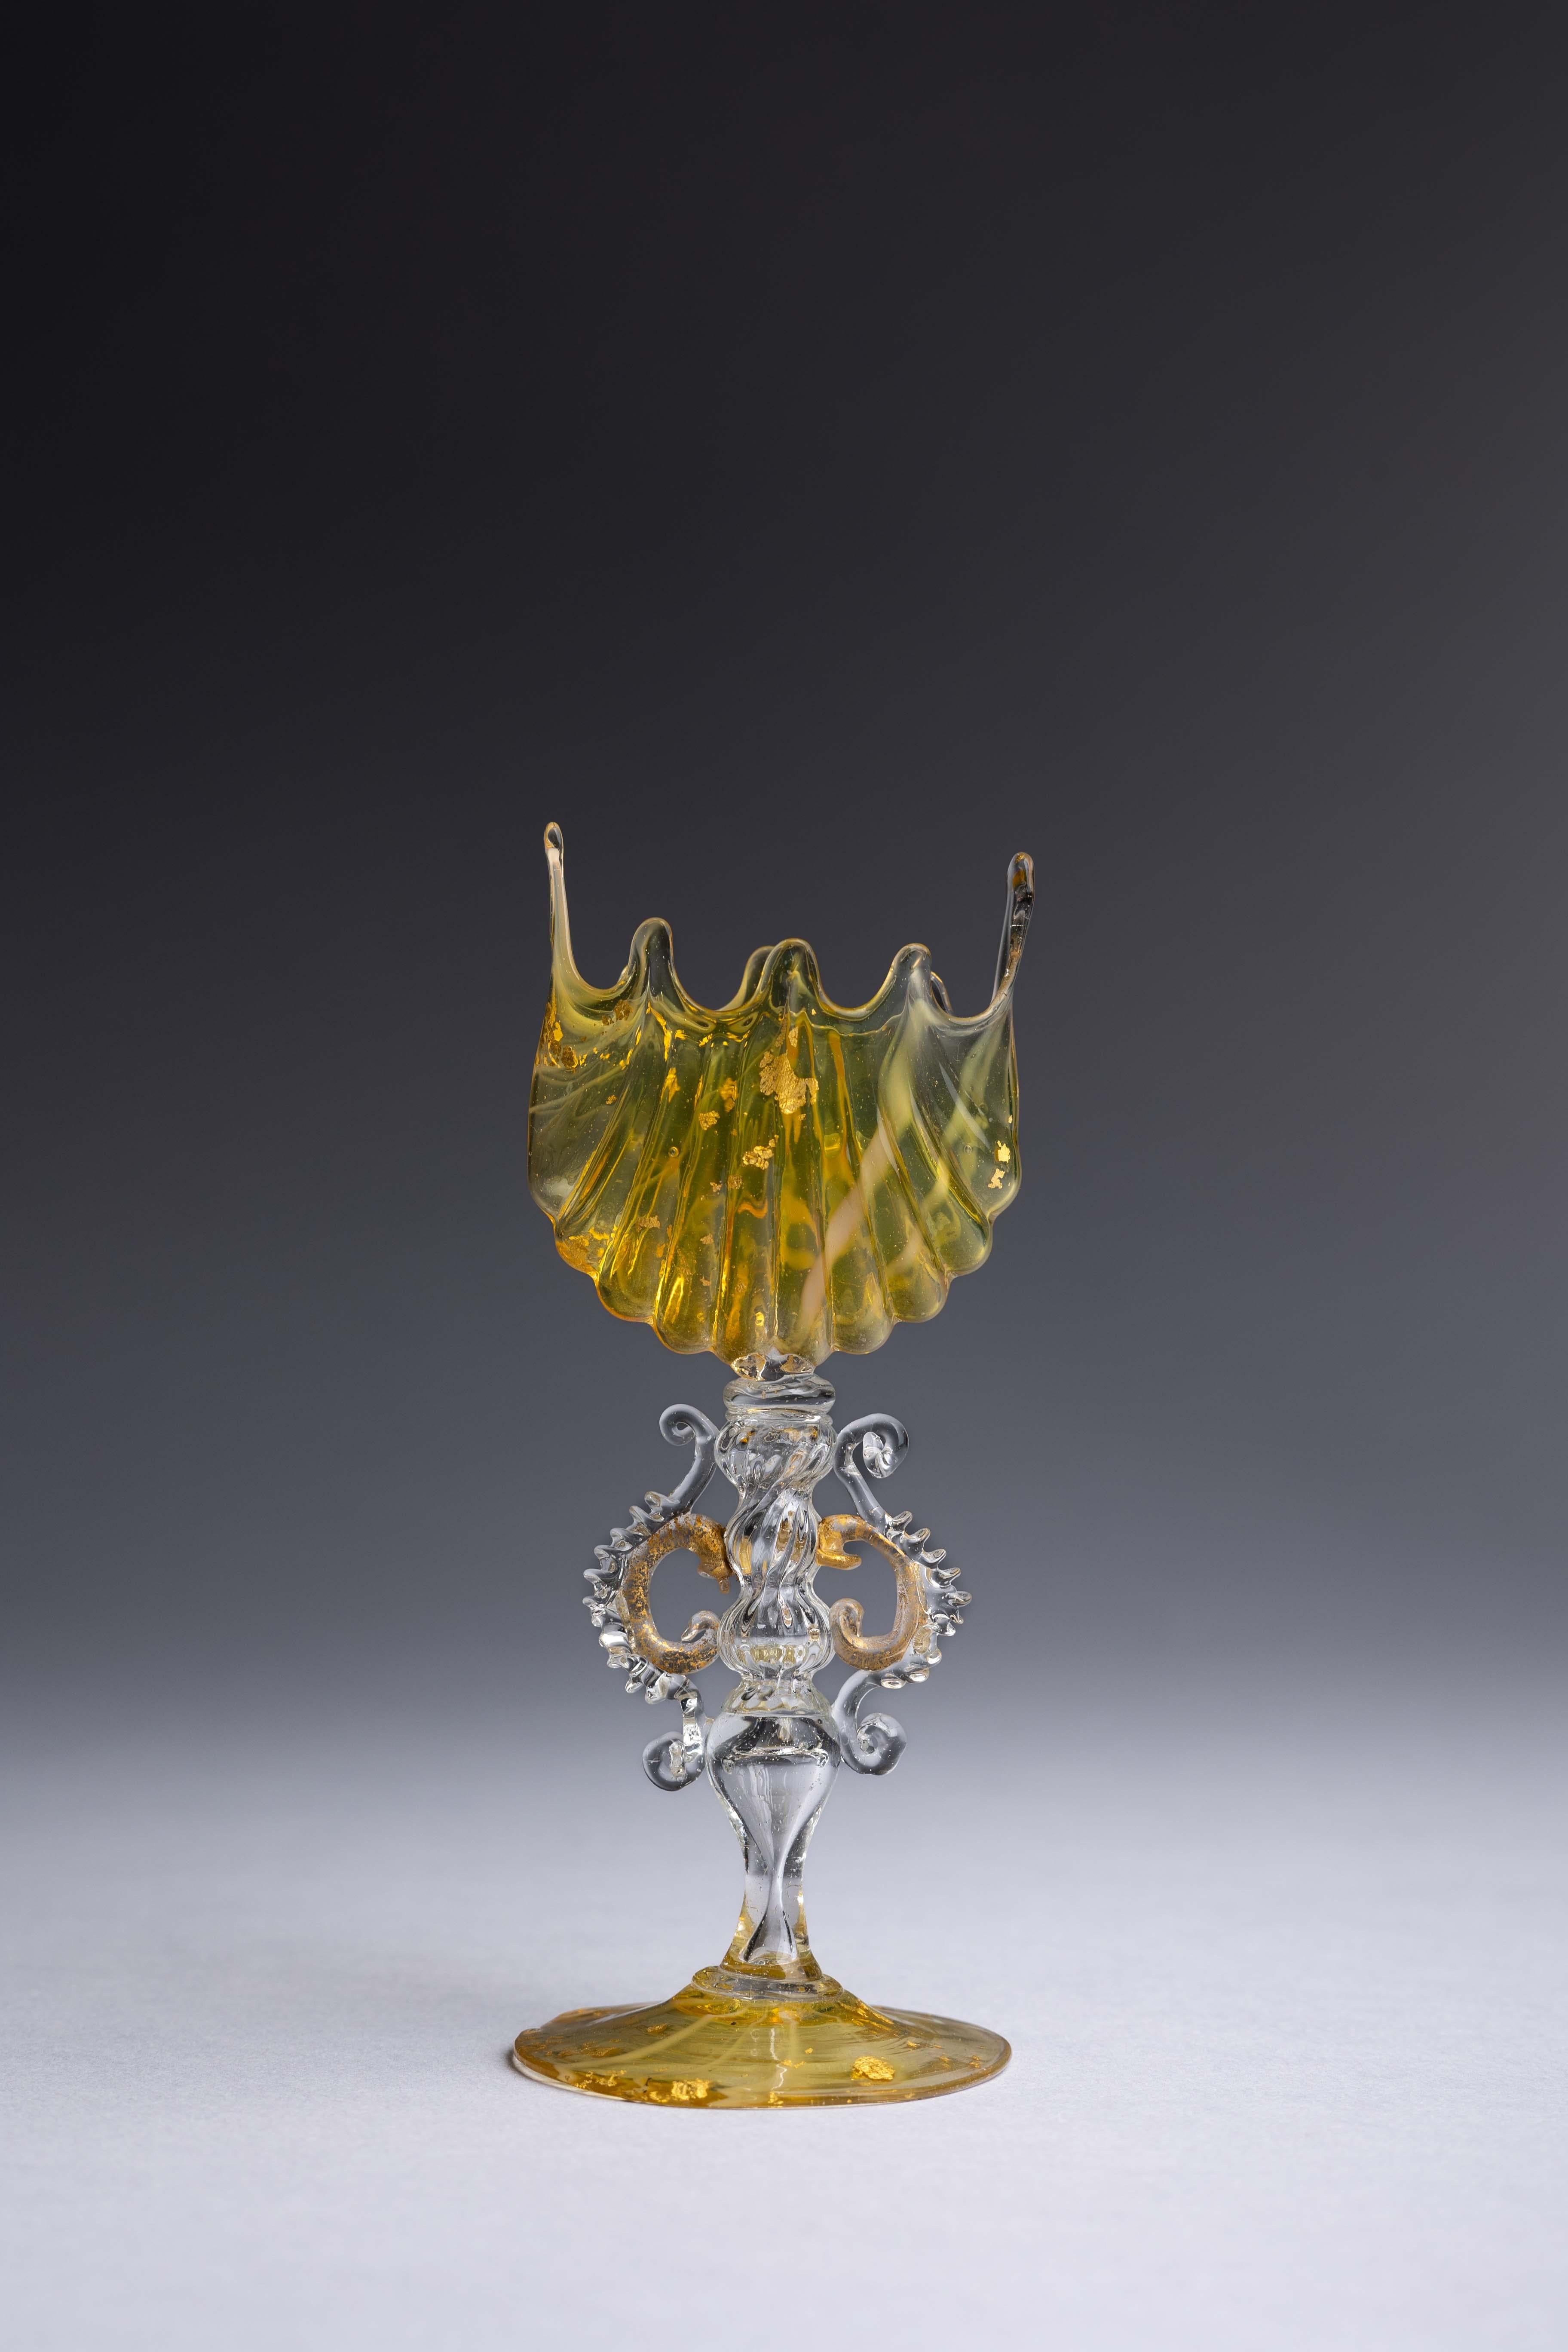 Un gobelet miniature en verre de Murano réalisé par les maîtres verriers Salviati & Co à la fin du 19e siècle, avec du verre jaune et transparent avec des mouchetures d'or torsadées dans une forme incroyablement complexe.

À la fin du XIXe siècle,